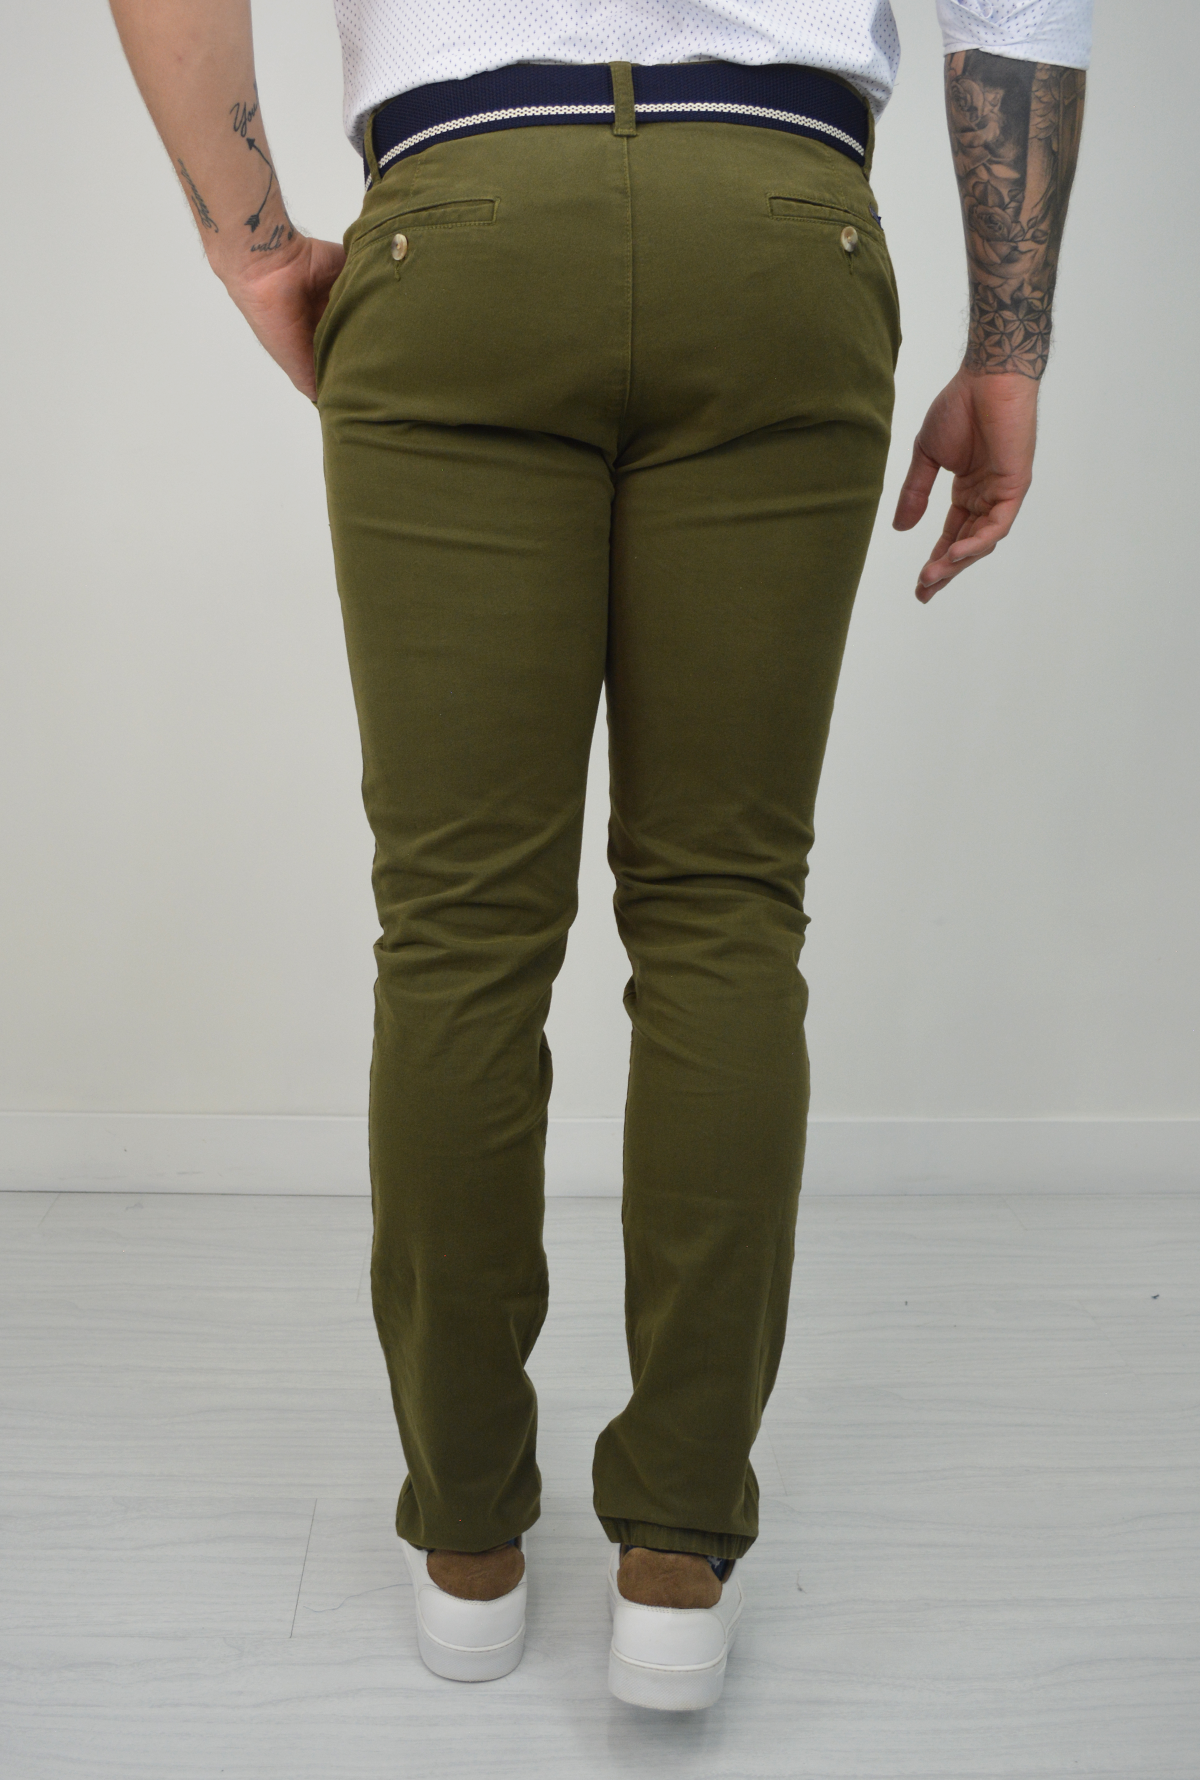 Pantalón Verde Para Hombre DPC1020